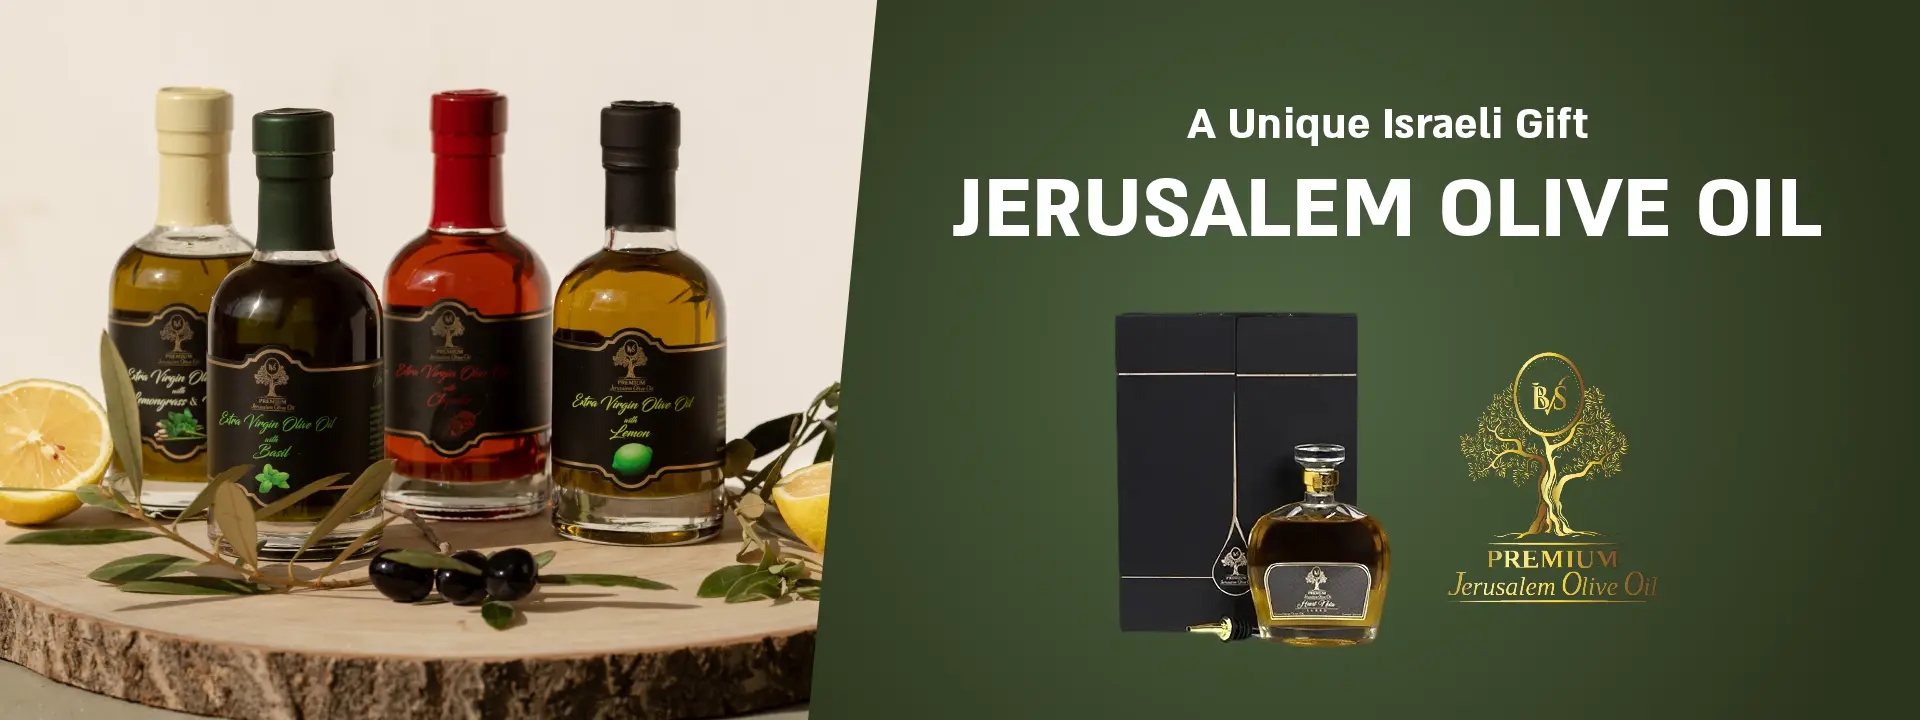 A Unique Israeli Gift | JERUSALEM OLIVE OIL